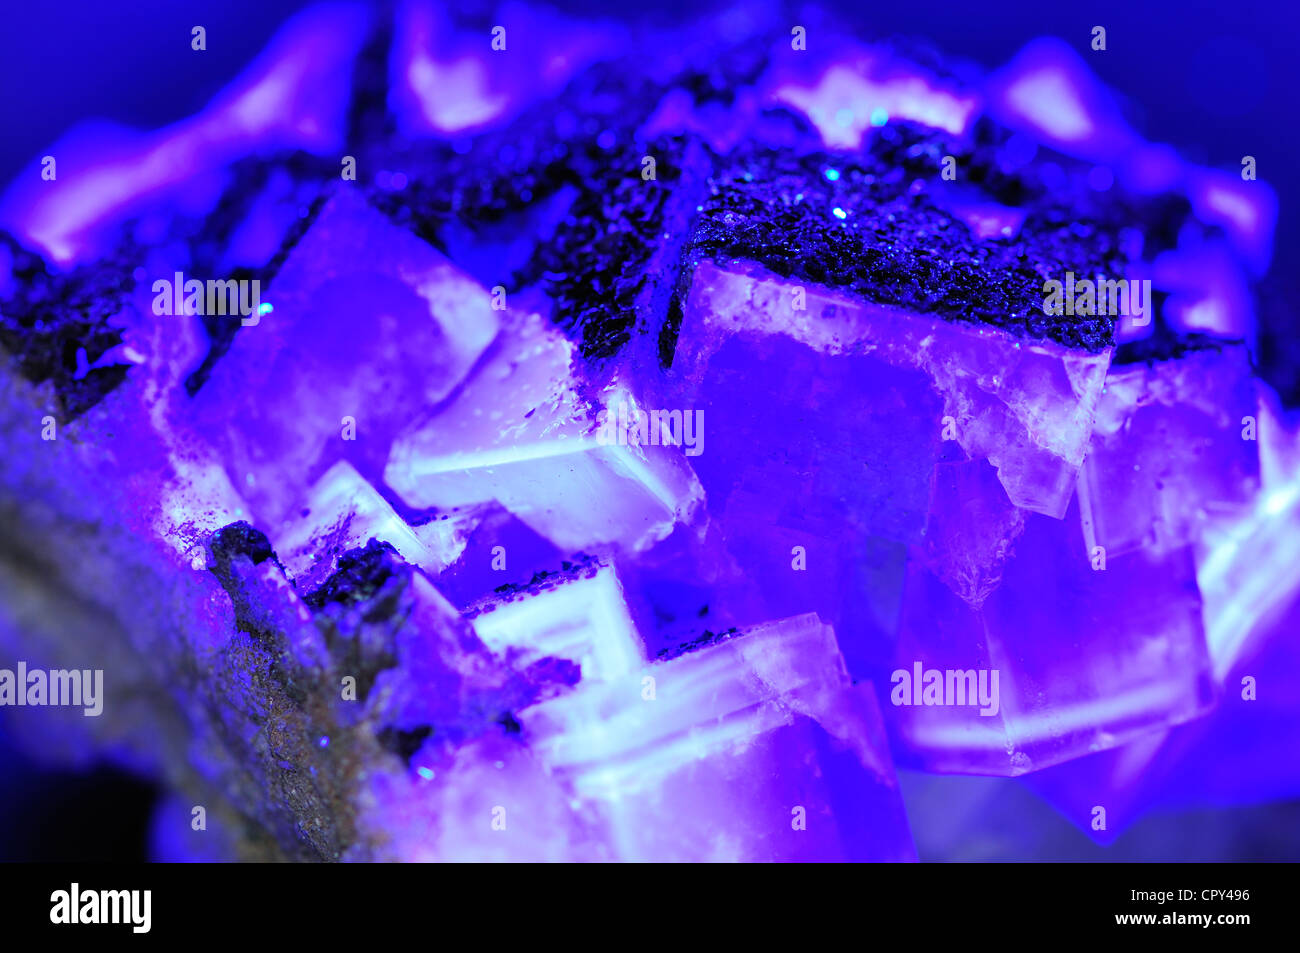 Cristaux de fluorite (fluorure de calcium) fluorescents sous la lumière ultraviolette Banque D'Images